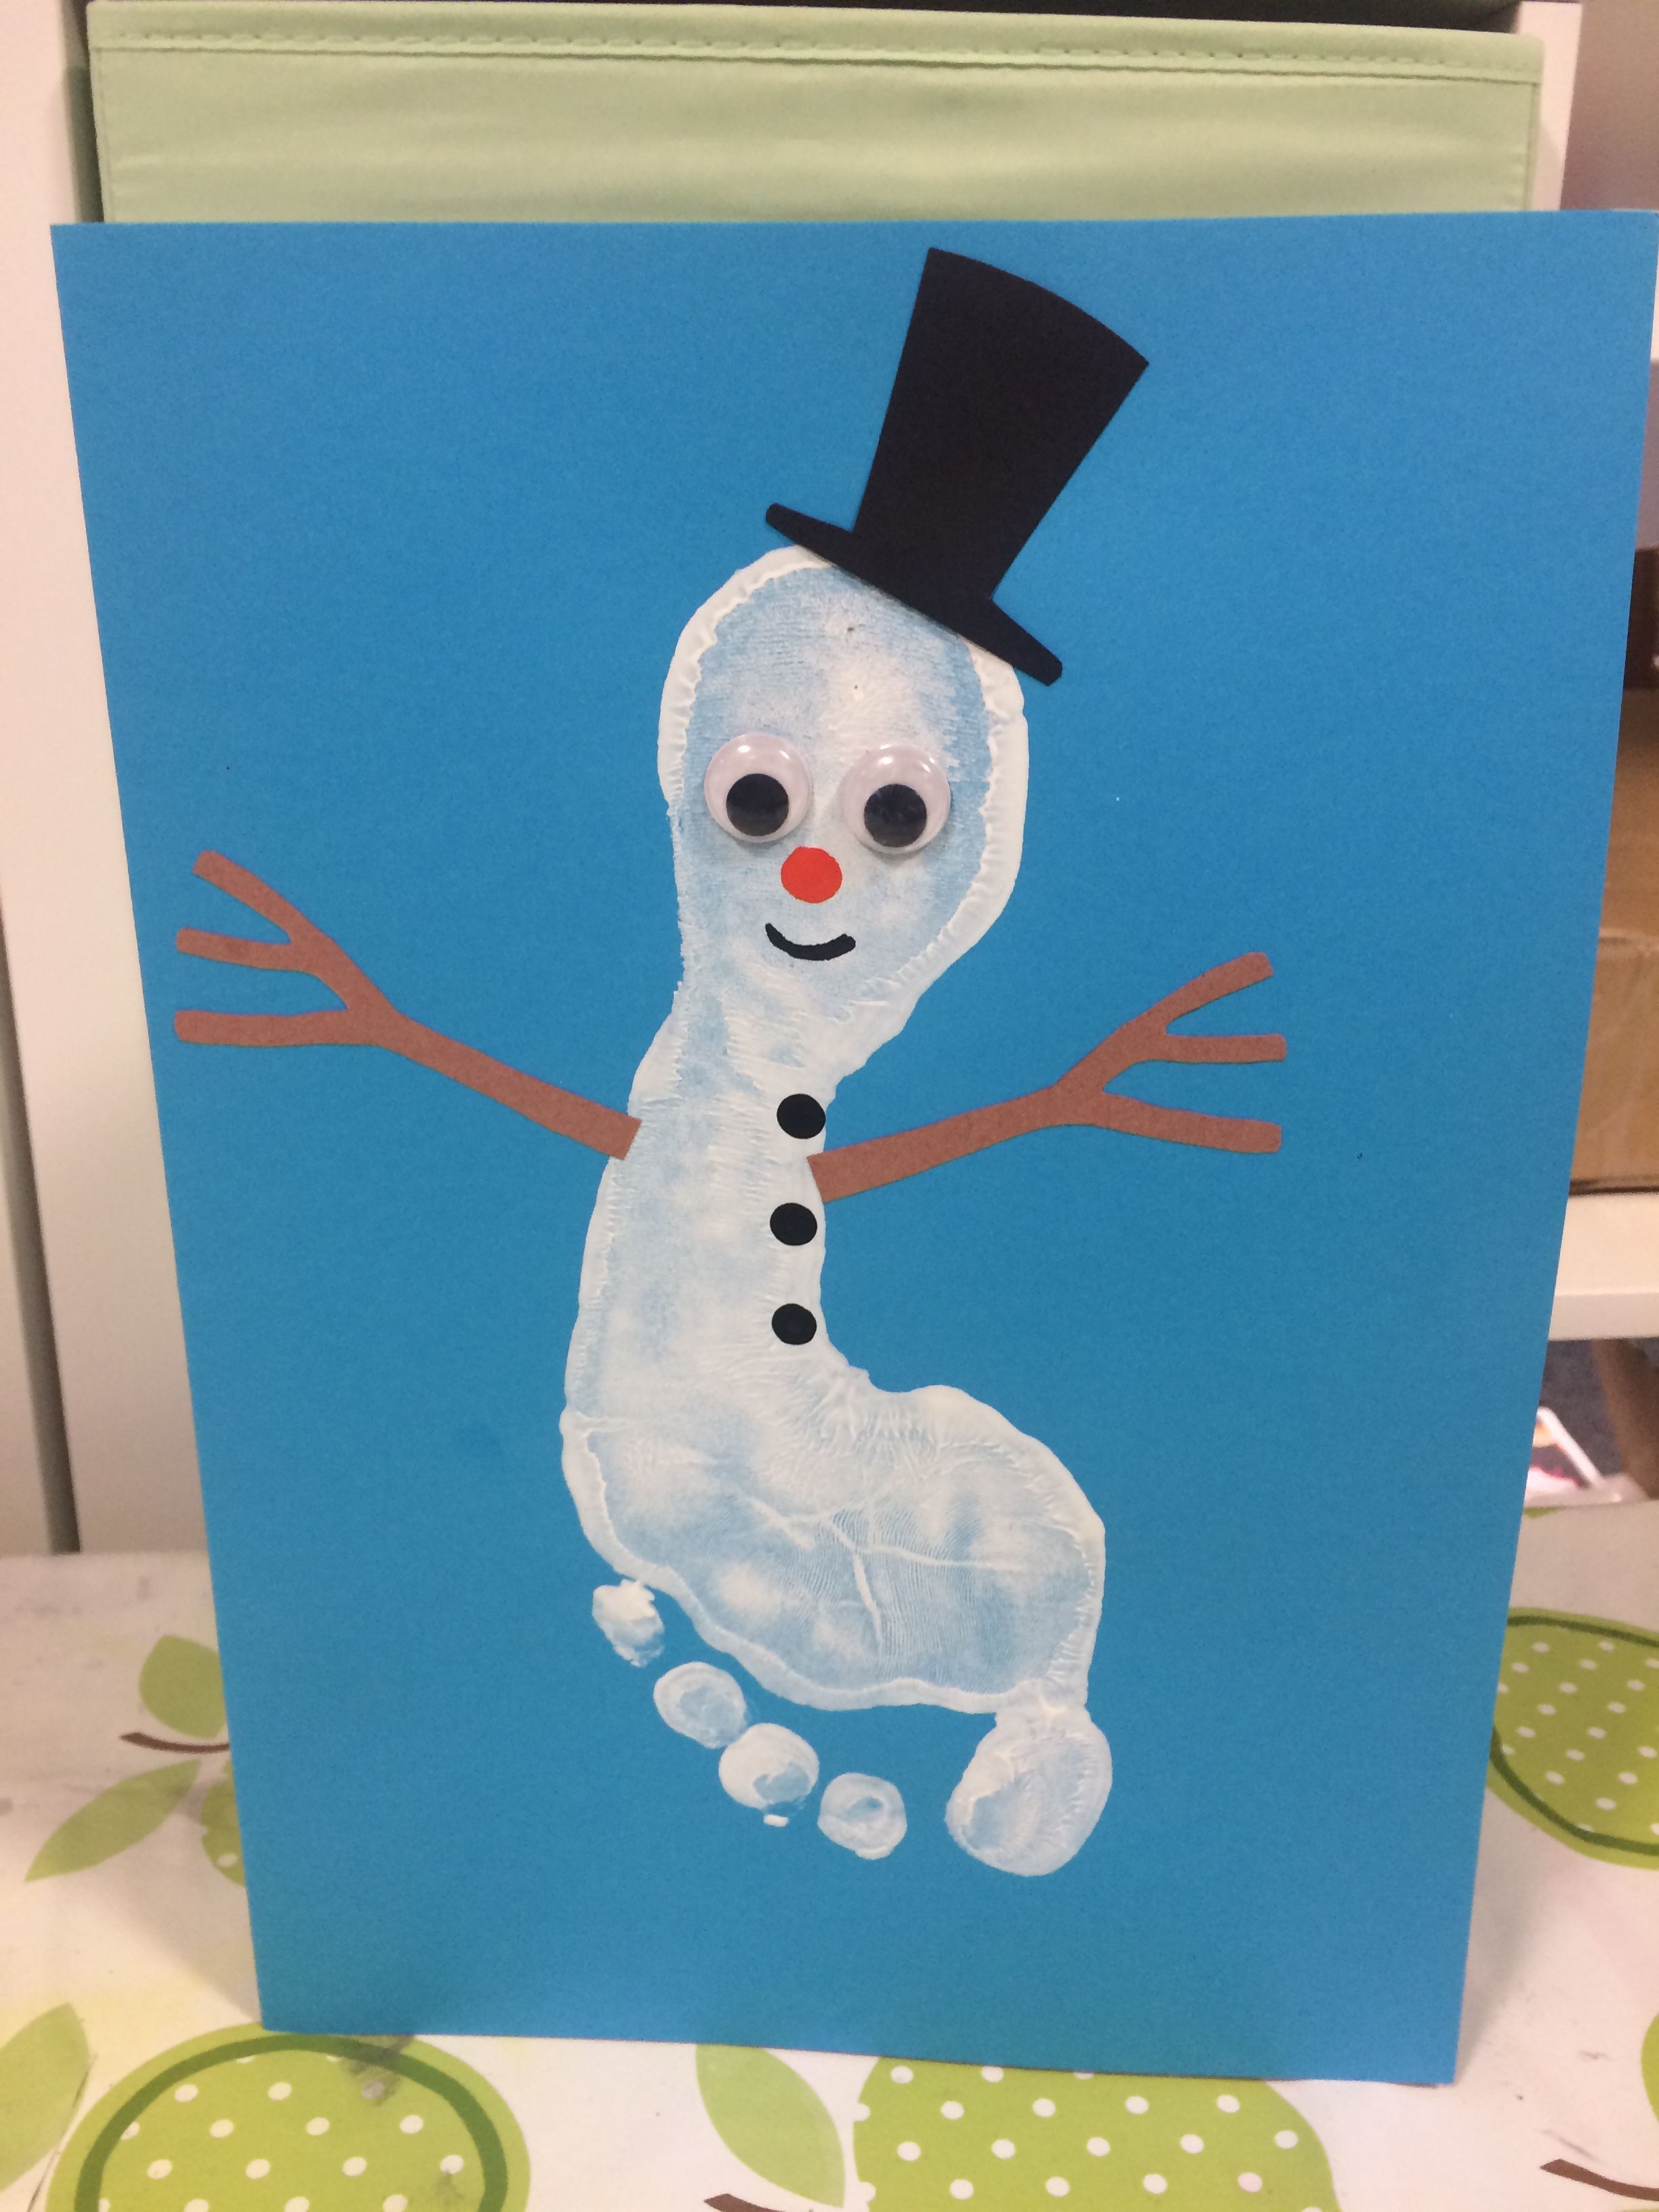 Footprint Snowman Winter Craft -   Search Results    snowman crafts footprint ideas